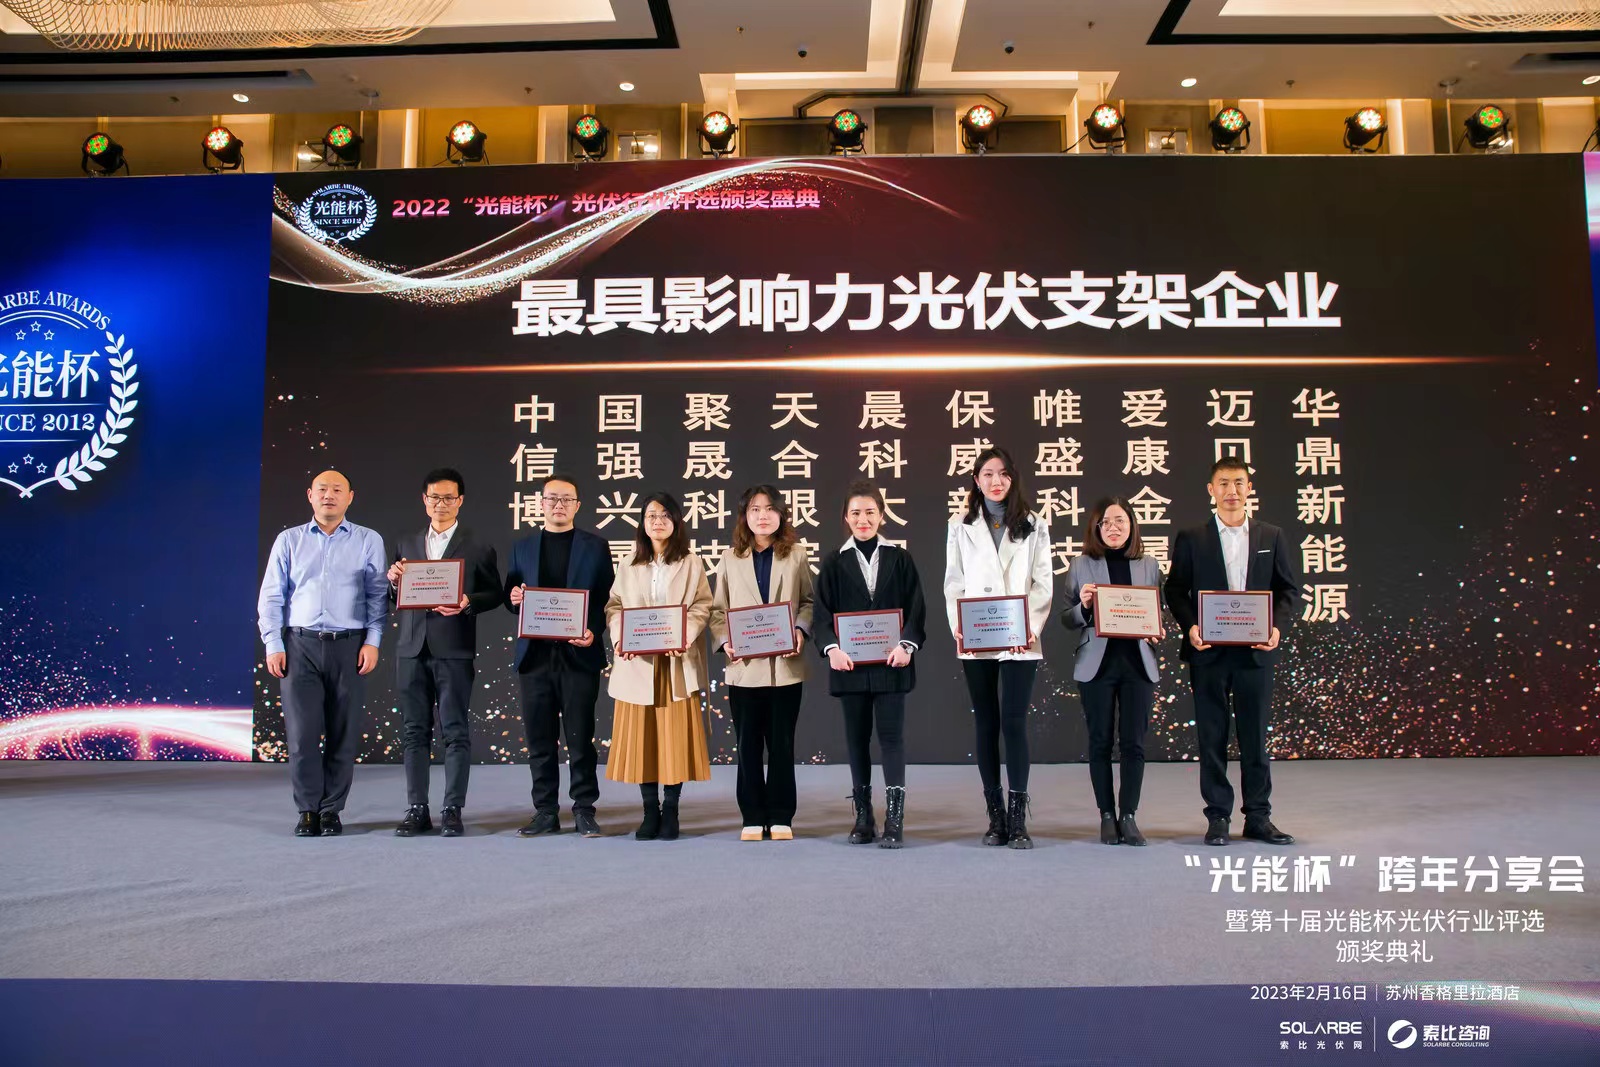 ยินดีด้วย!Shanghai CHIKO ได้รับรางวัลองค์กรติดตั้งพลังงานแสงอาทิตย์ที่ทรงอิทธิพลที่สุดในปี 2022